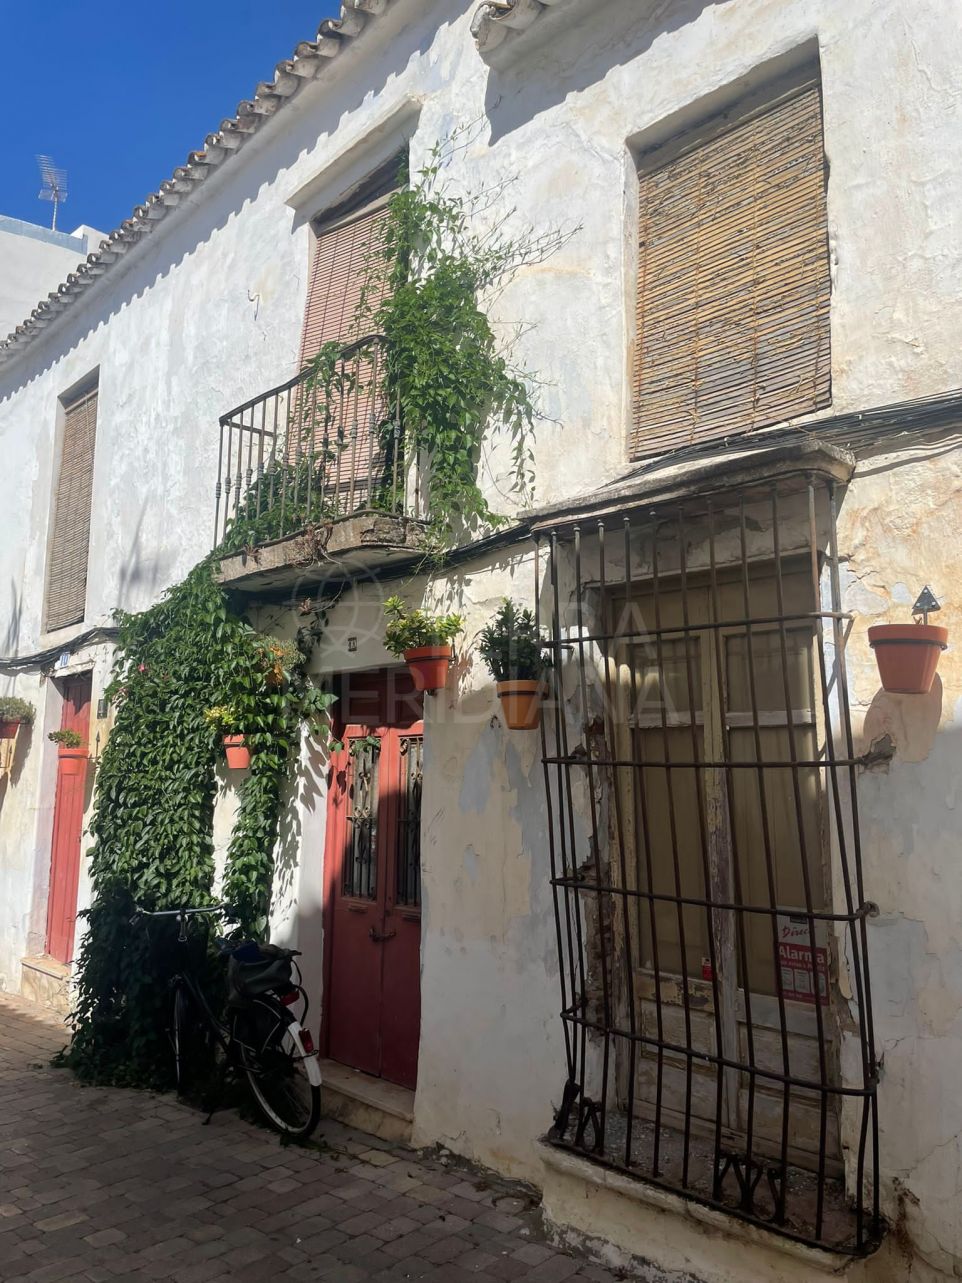 Oportunidad de Renovación: Casa de Pueblo Histórica con Características Originales en Venta en el Casco Antiguo de Estepona